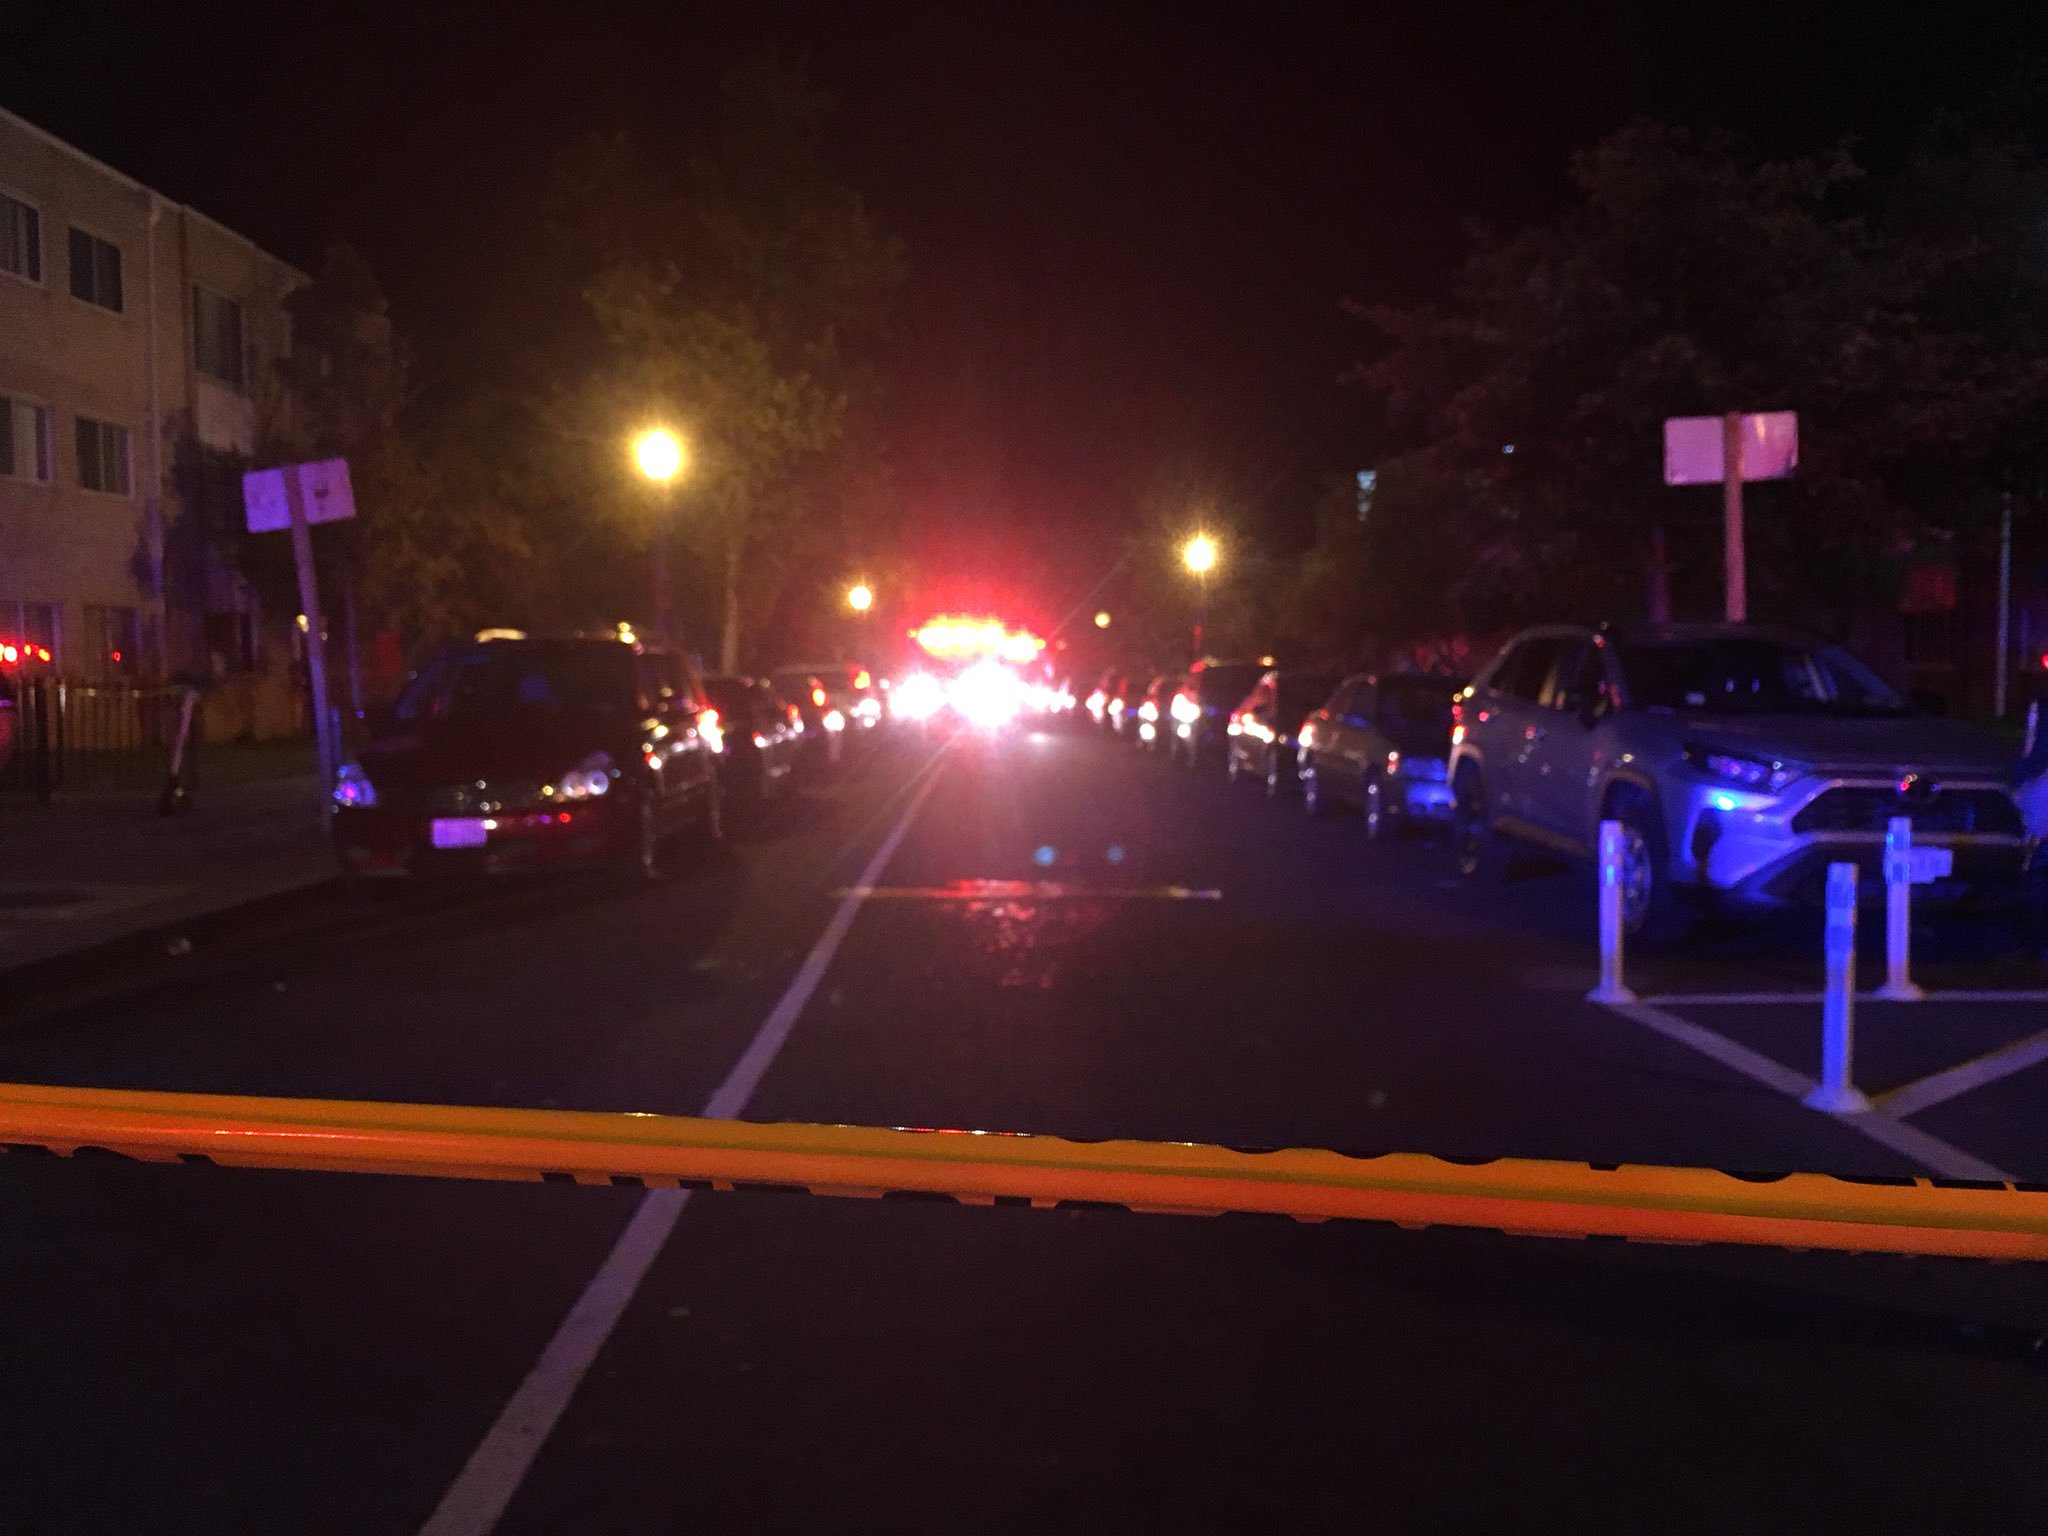 Δύο περιστατικά με πυροβολισμούς στην Ουάσινγκτον – Δύο νεκροί και επτά τραυματίες